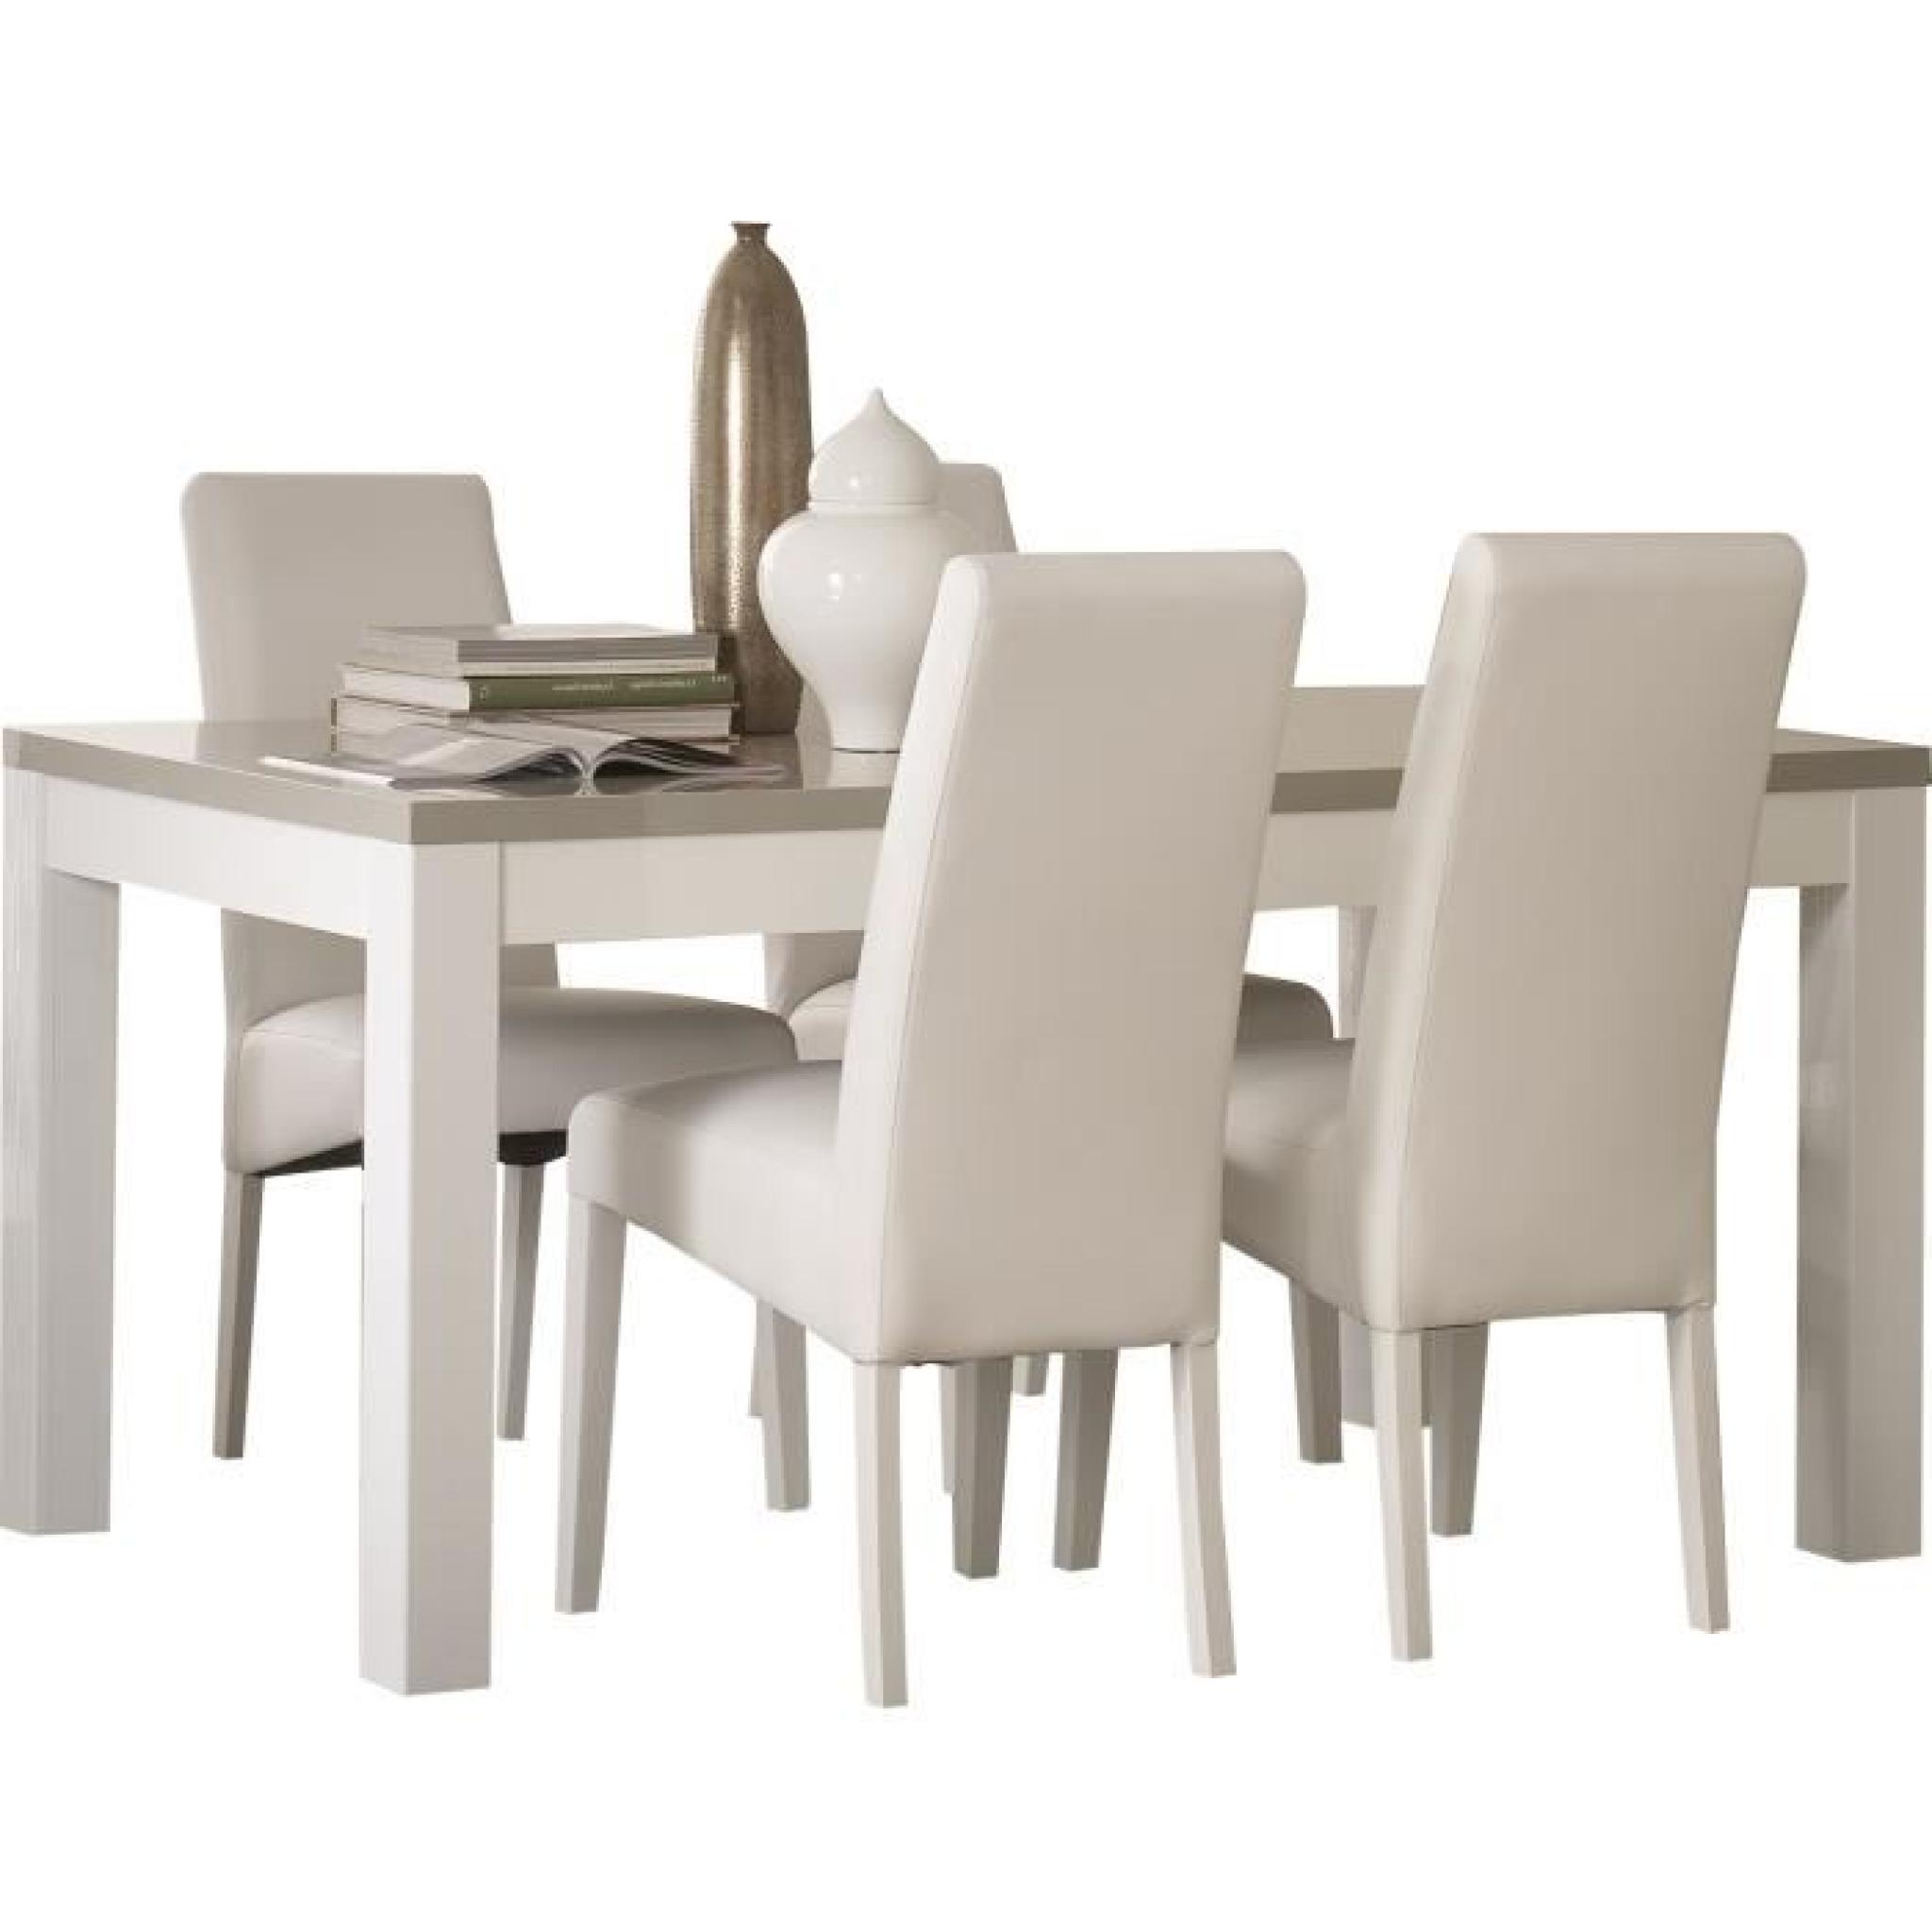 Table 190 cm blanc et gris + 4 chaises coloris blanc